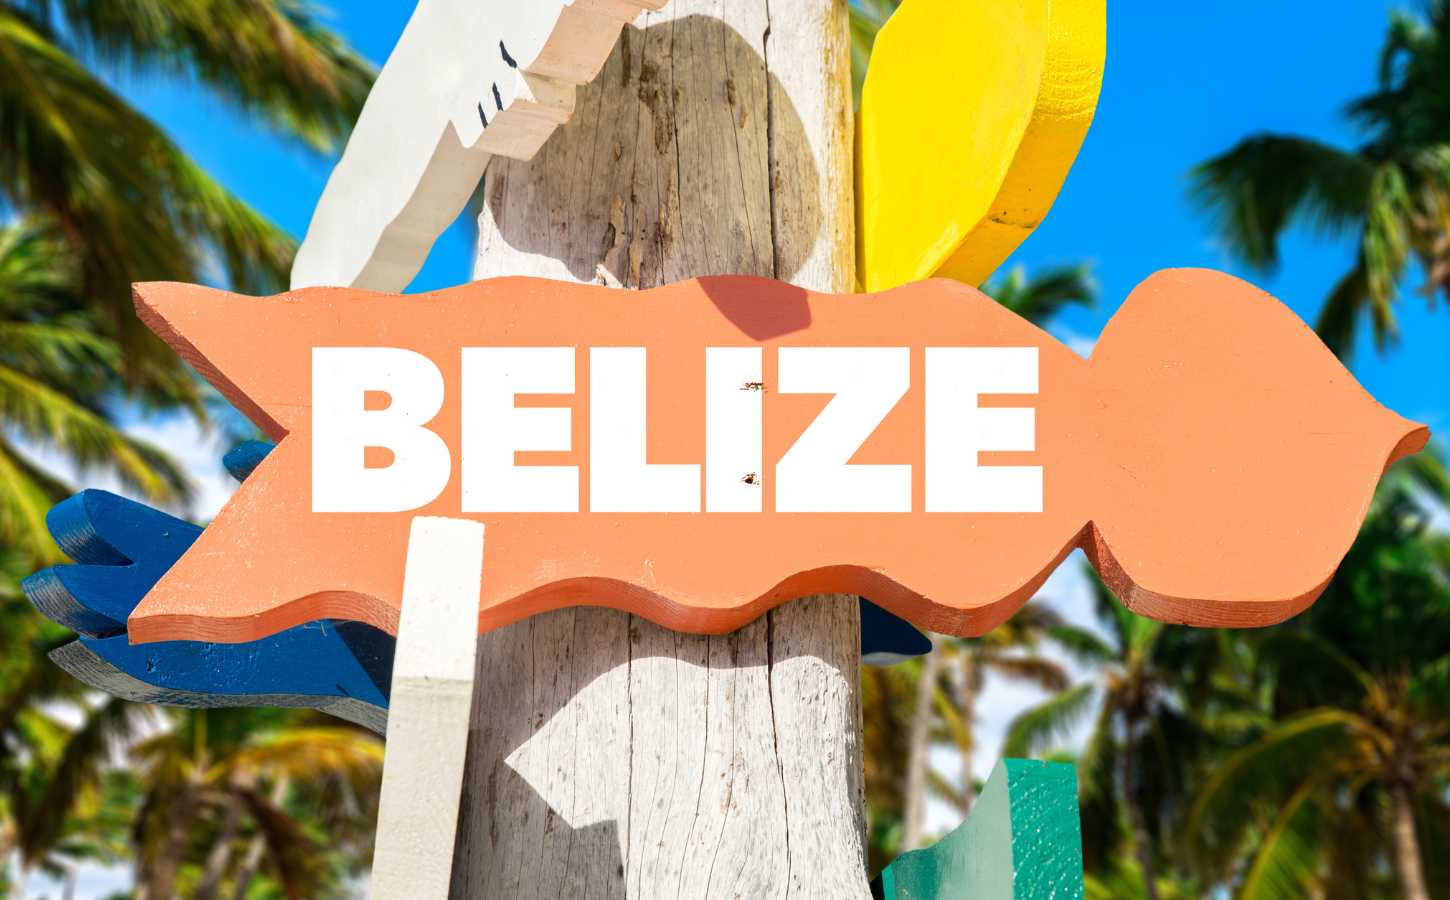 Belize in Annex II: Legal & Economic Impact